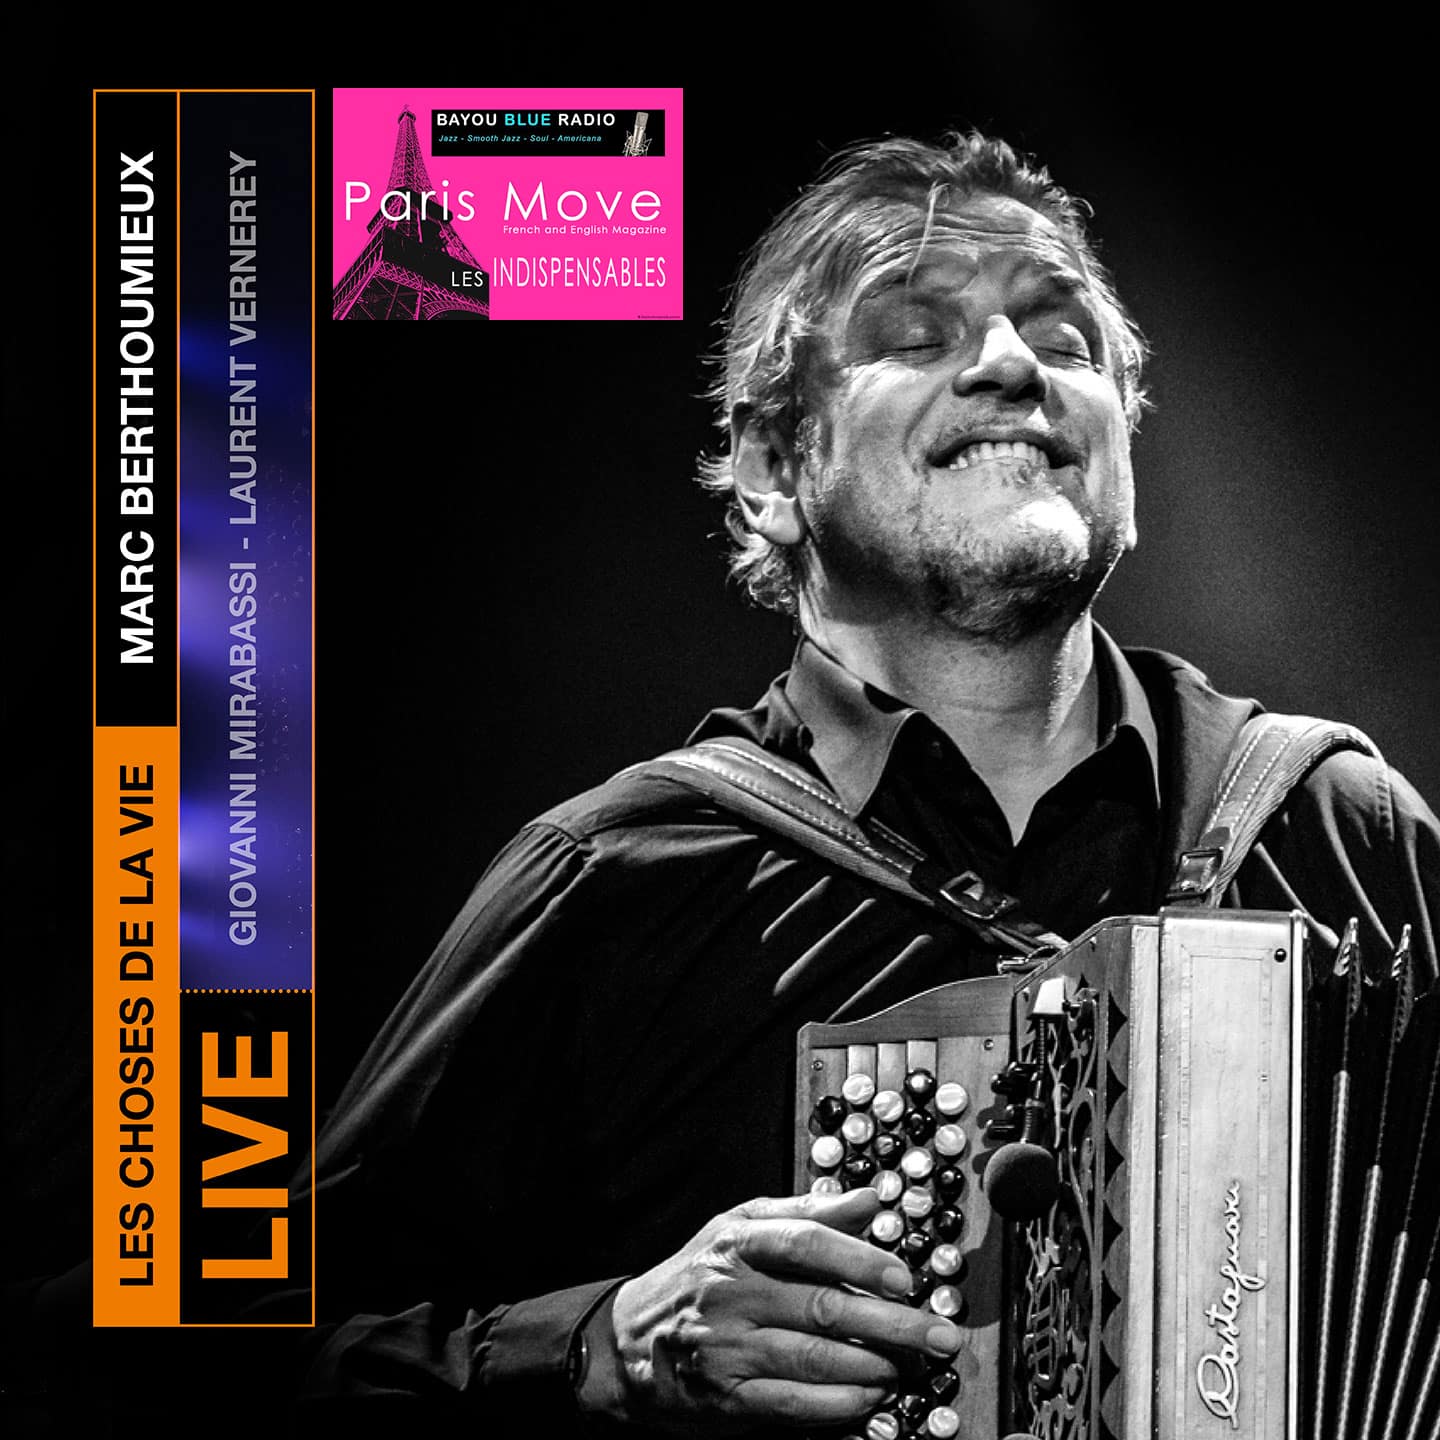 Marc Berthoumieux – Les Choses de la vie (live)